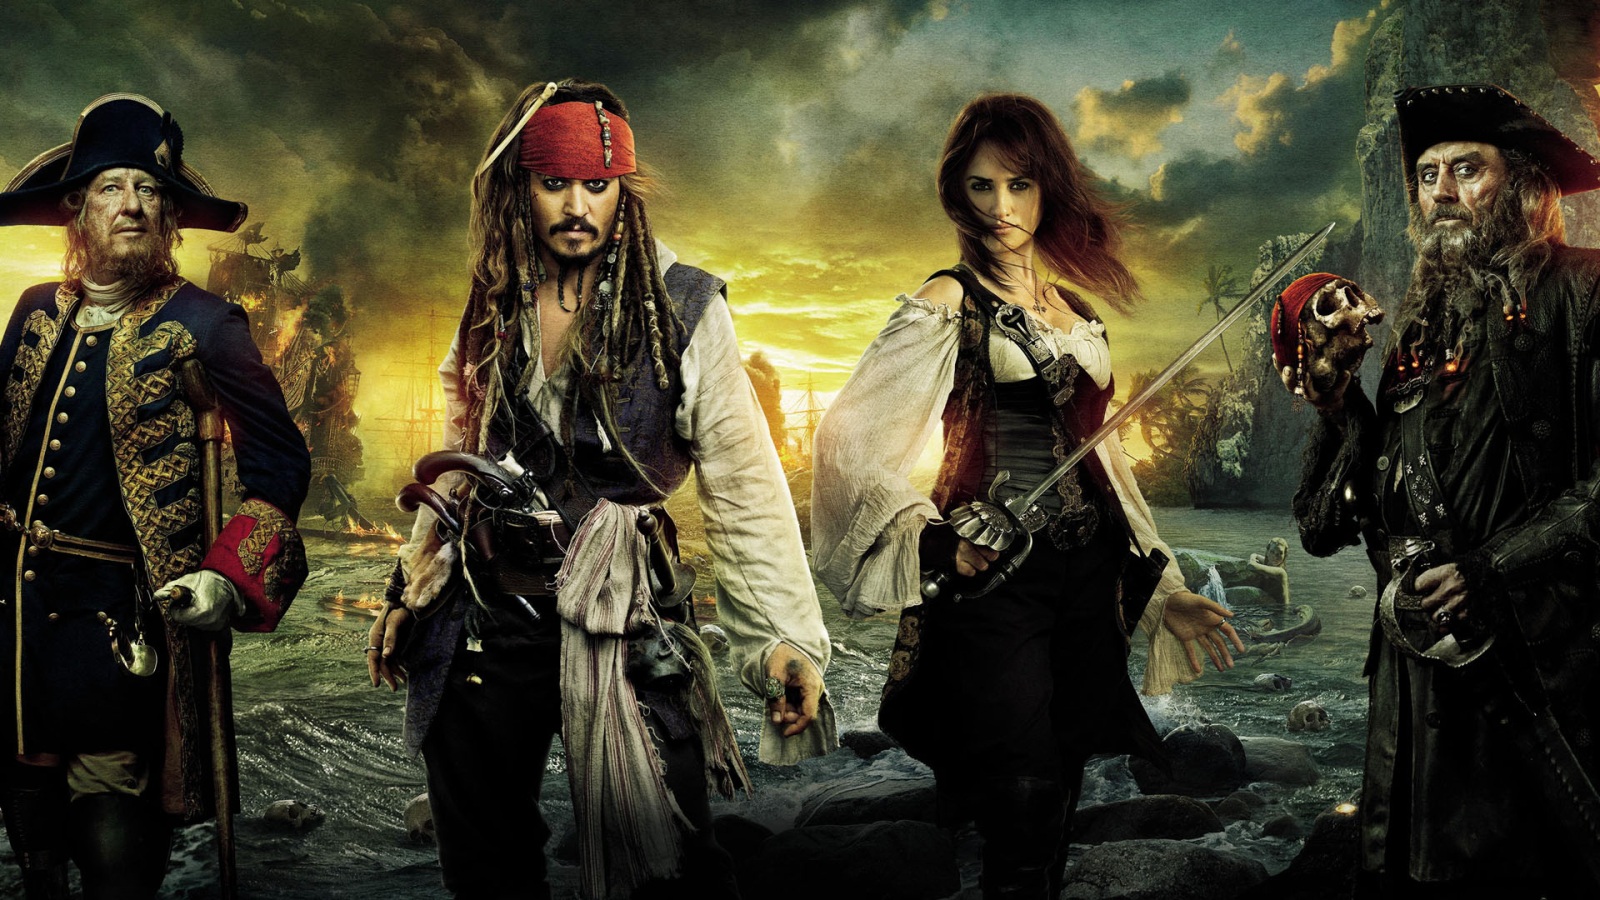 http://www.houyhnhnm.jp/blog/moriyama/images/jedi_Pirates_of_the_Caribbean_On_Stranger_Tides_Movie.jpg